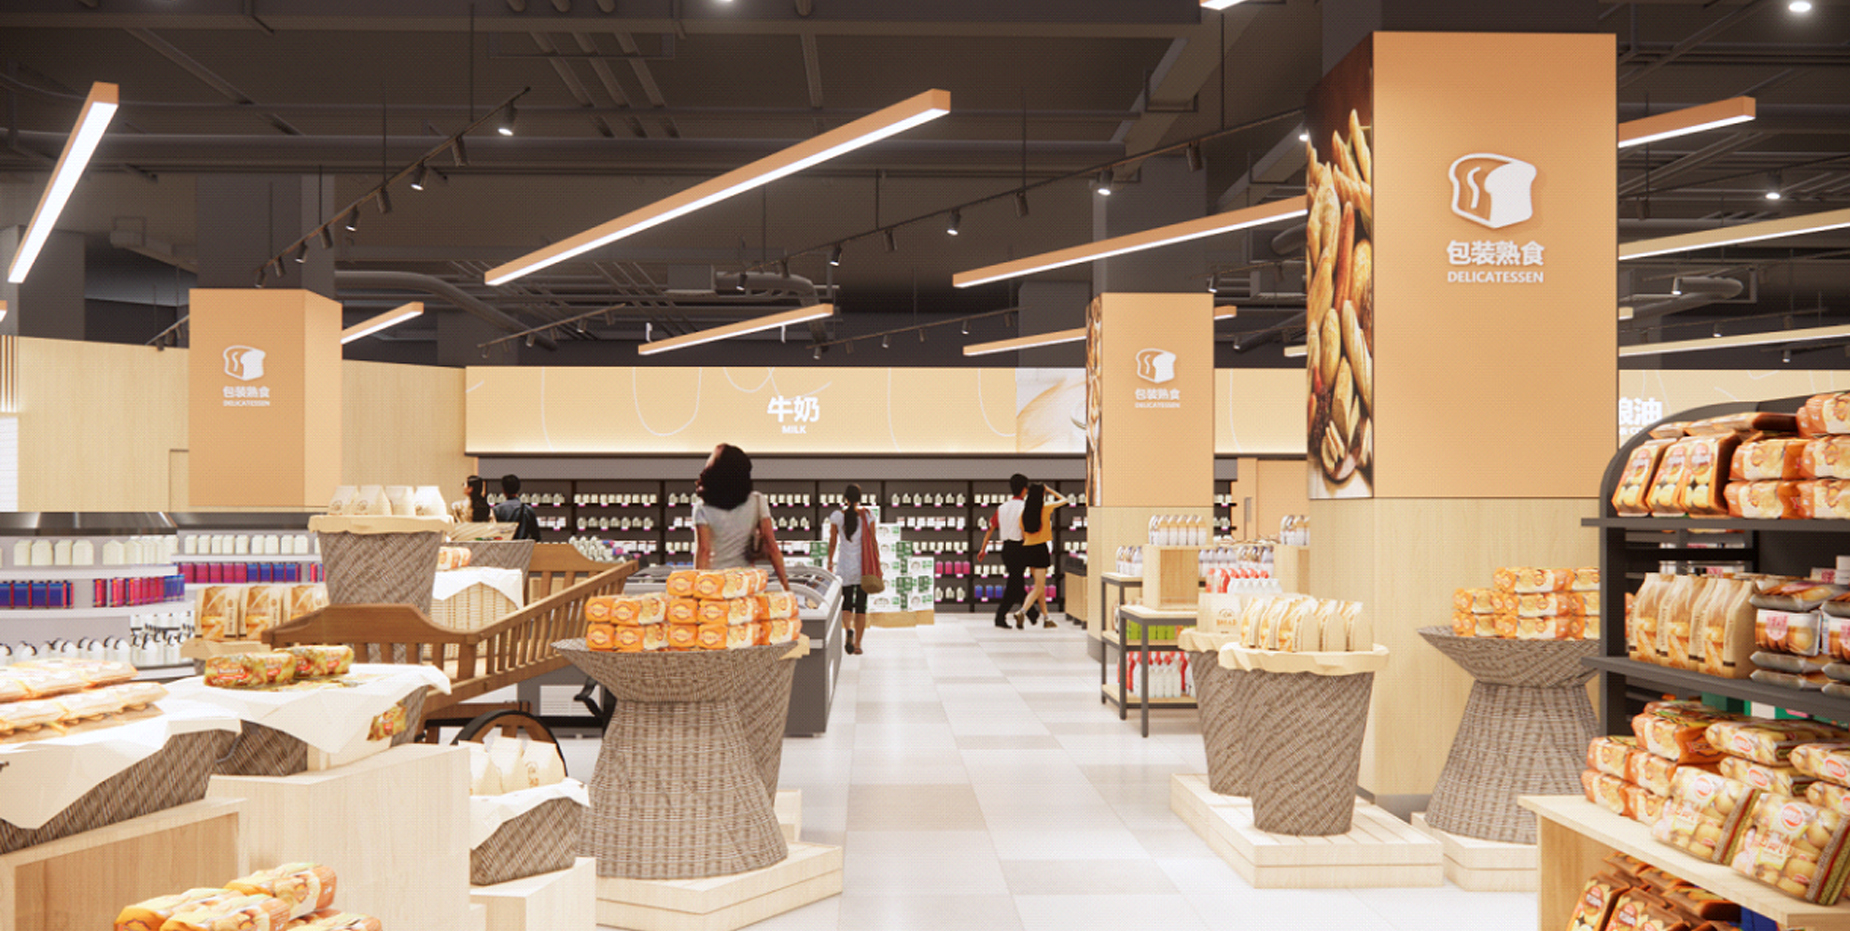 京客隆超市甜水园店改造设计_GMD国际设计